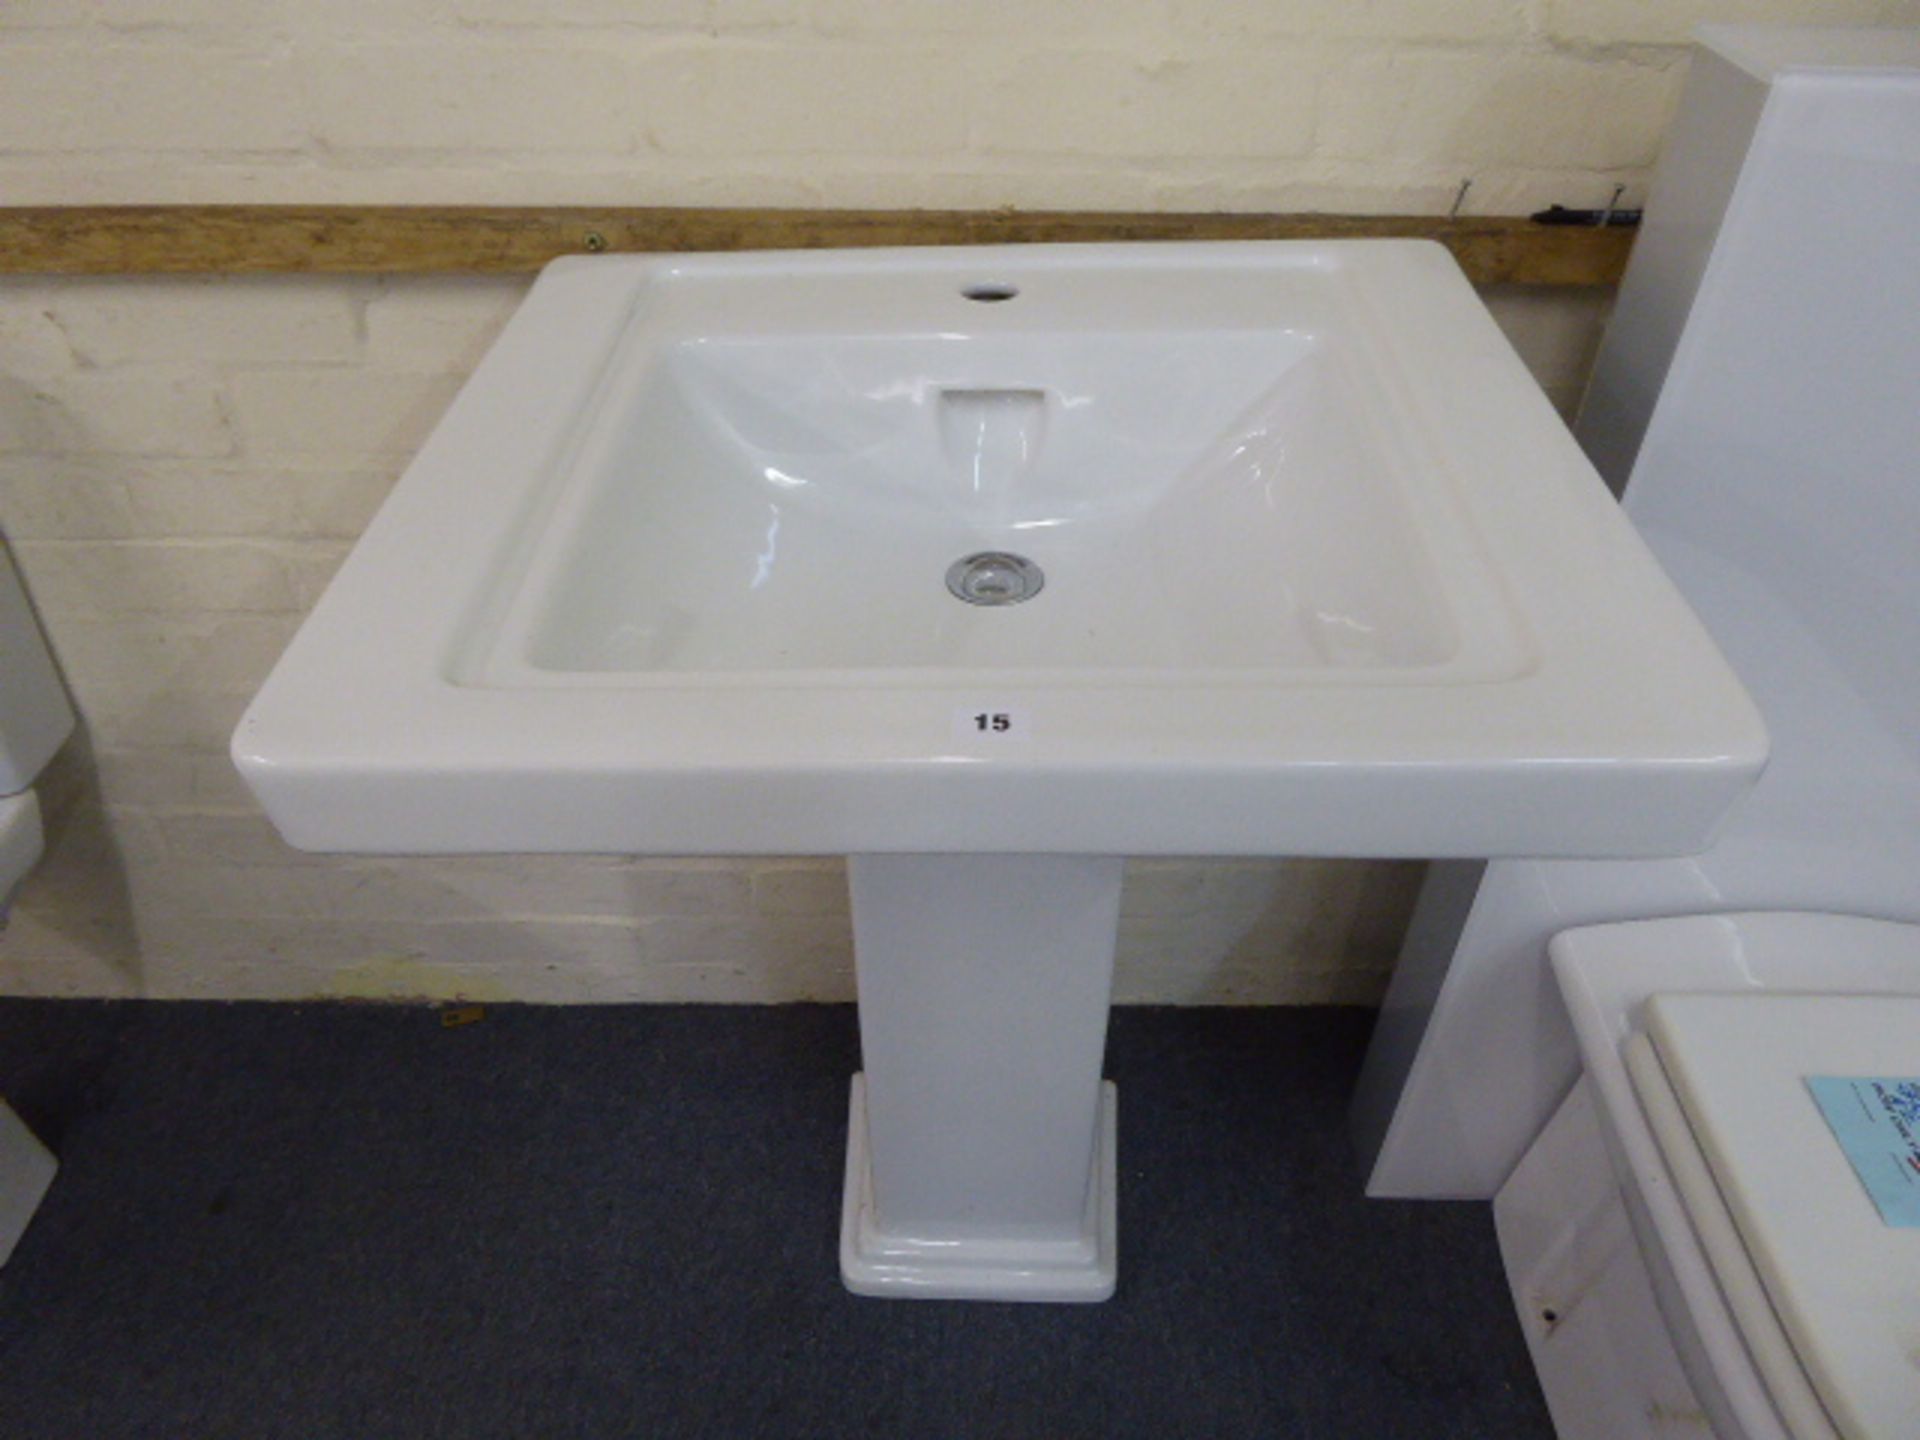 Rectangular Edwardian style white ceramic wash basin and pedestal